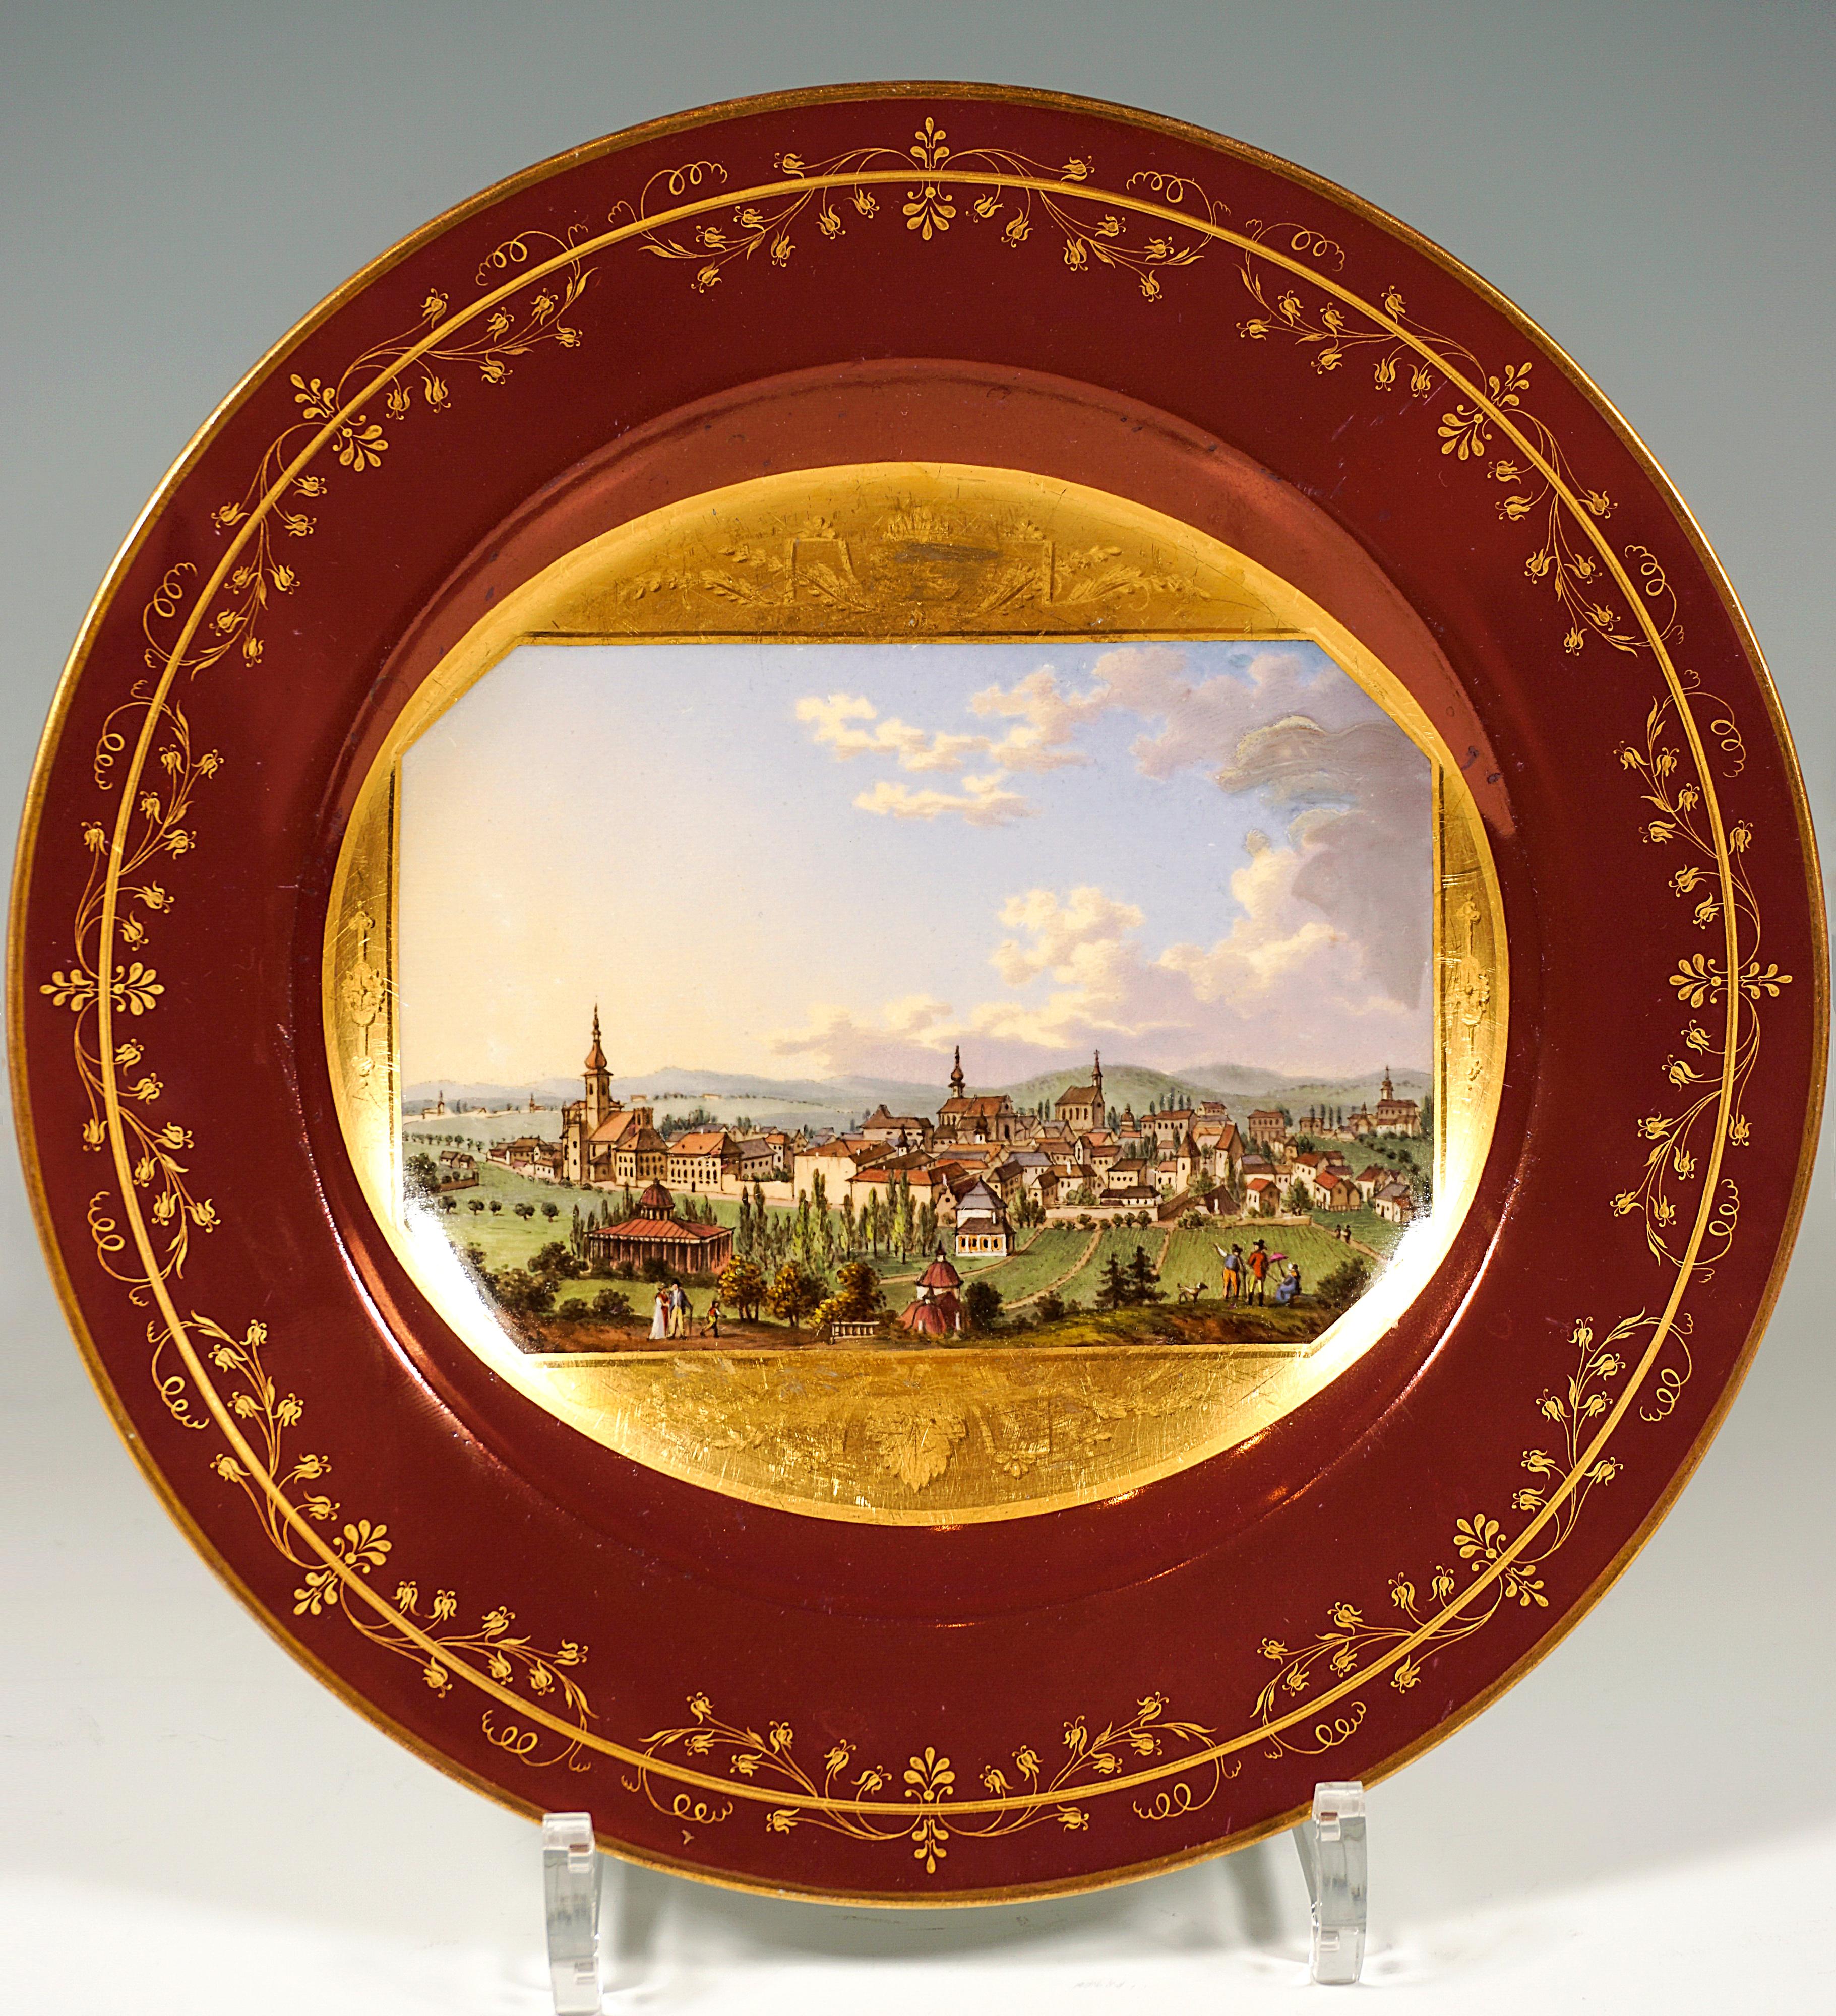 Assiette en porcelaine décorée d'une fine peinture veduta : dans le miroir, panneau pictural octogonal sur fond doré, encadré de festons peints en or mat au-dessus et au-dessous du tableau, représentant la vue de Baden bei Wien depuis le